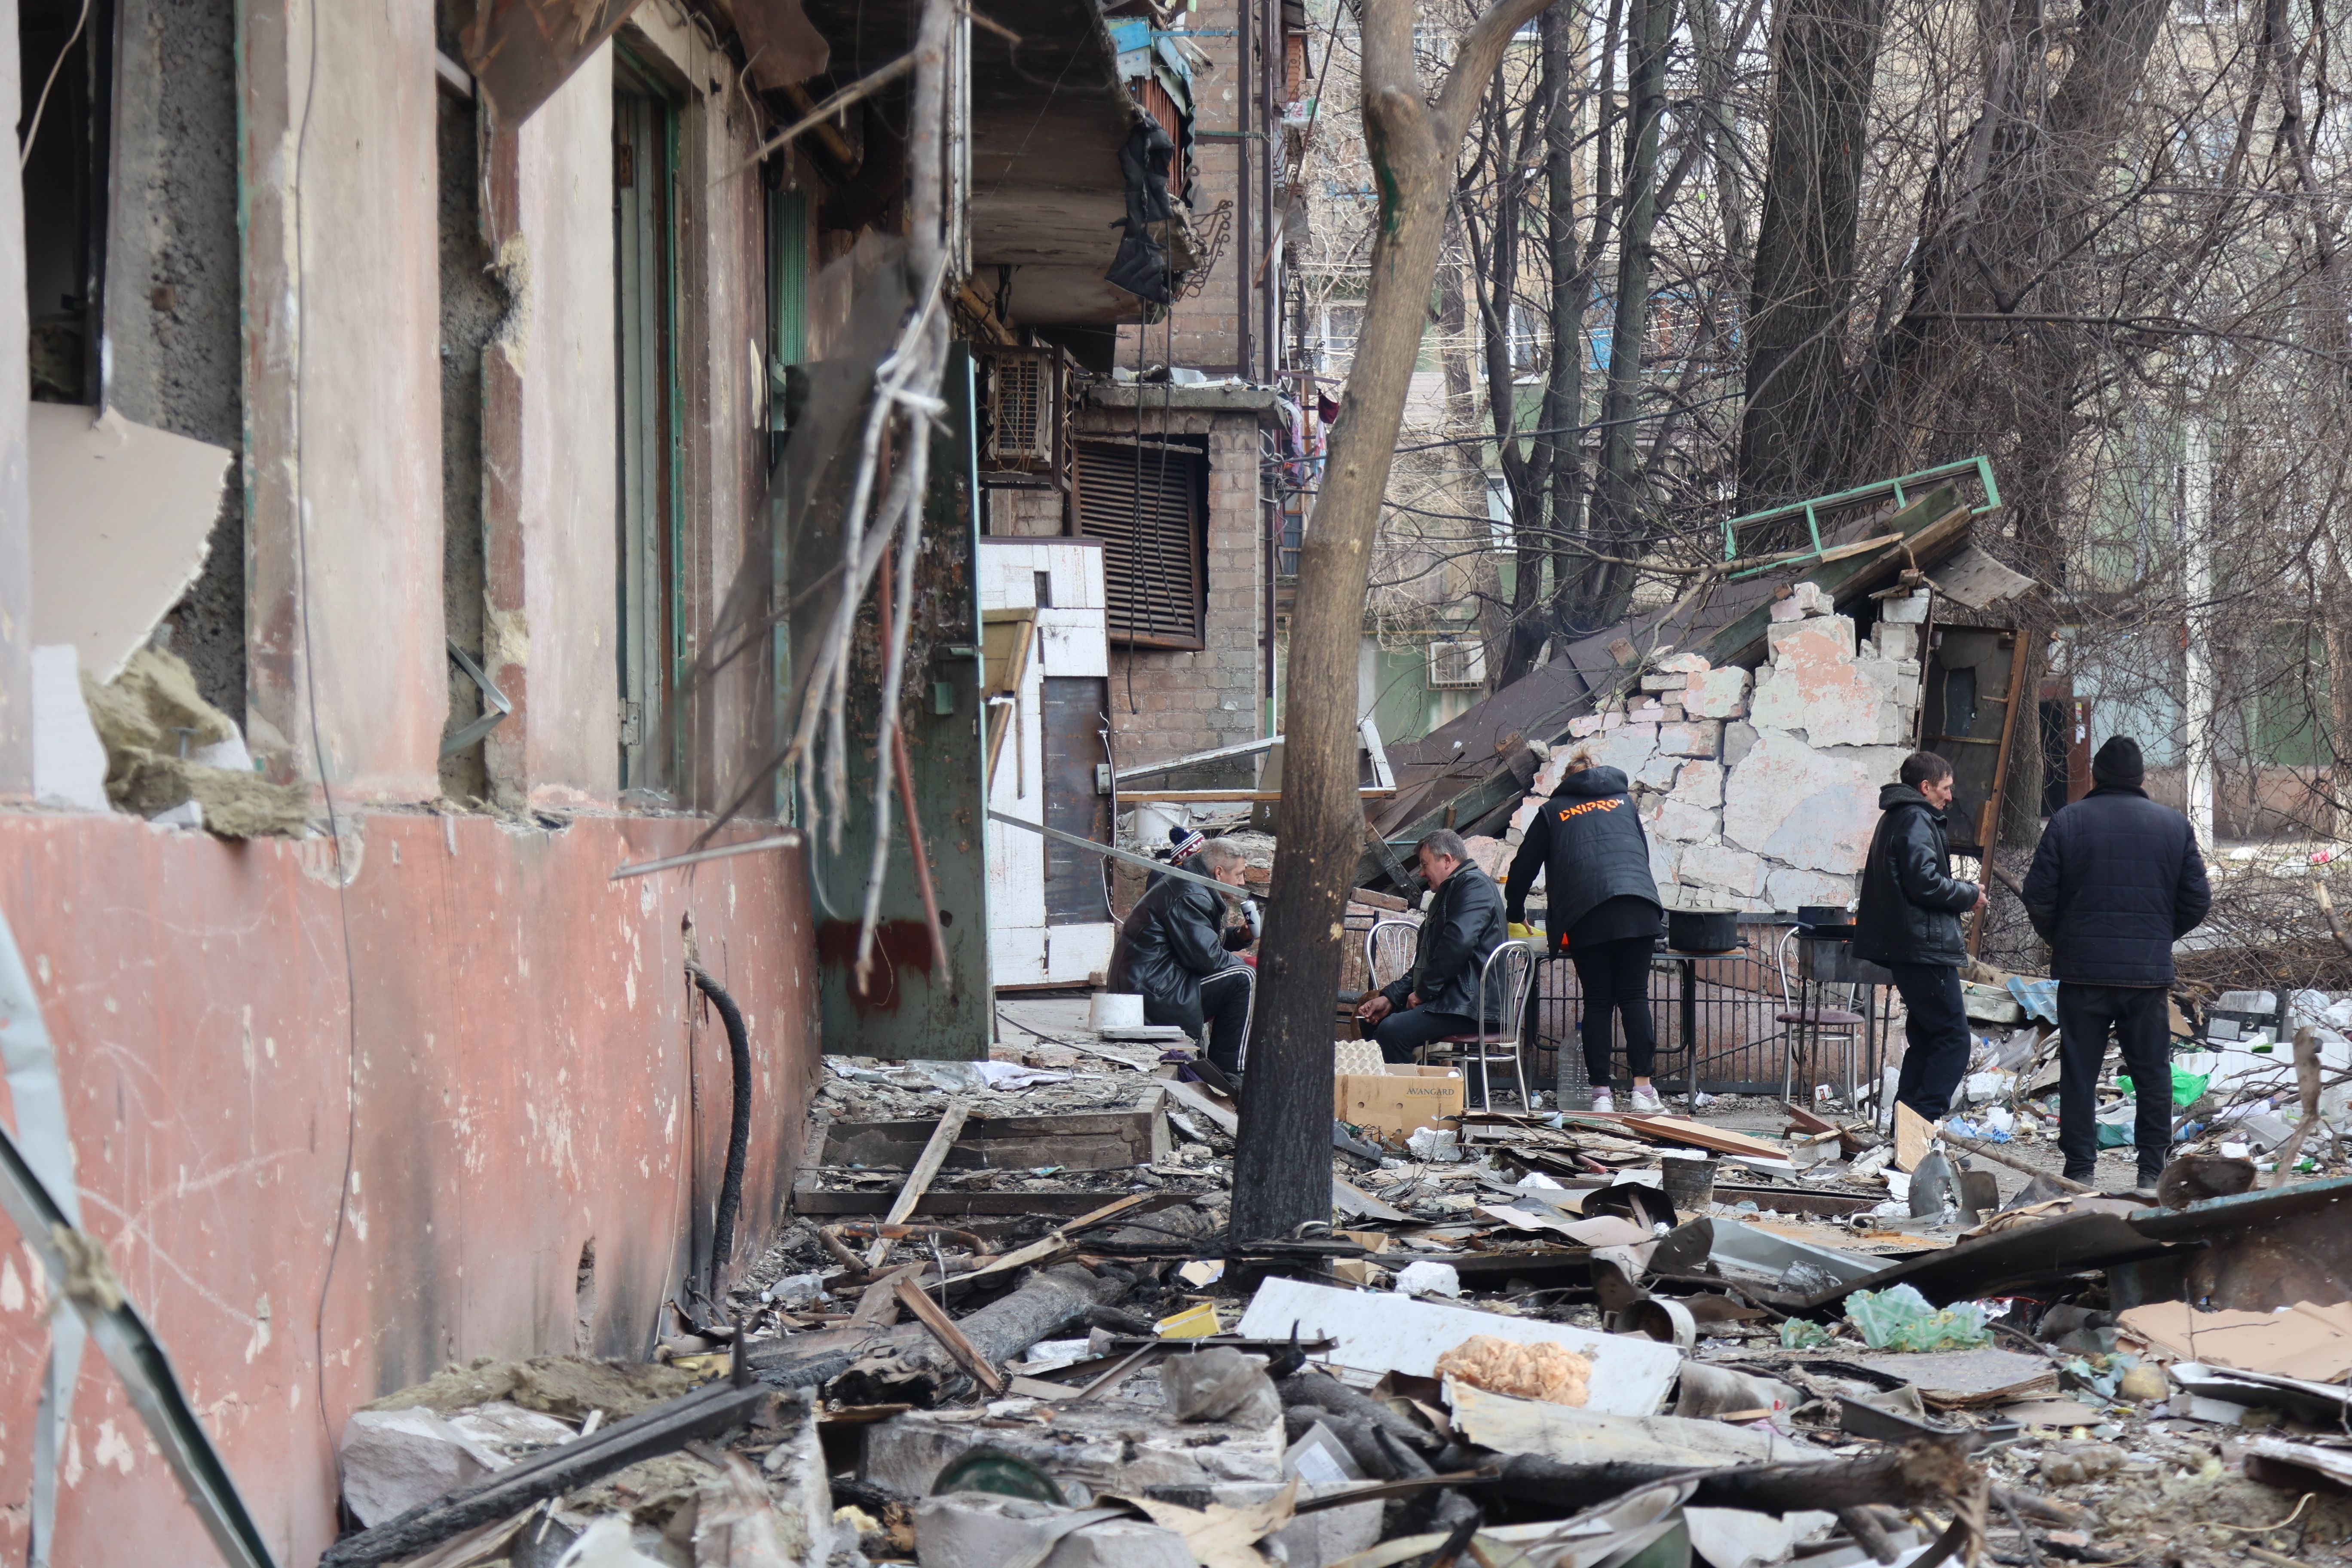  Pemandangan bangunan dan kendaraan yang rusak setelah penembakan kota Mariupol di Ukraina pada 29 Maret, yang dikendalikan oleh militer Rusia dan separatis pro-Rusia.